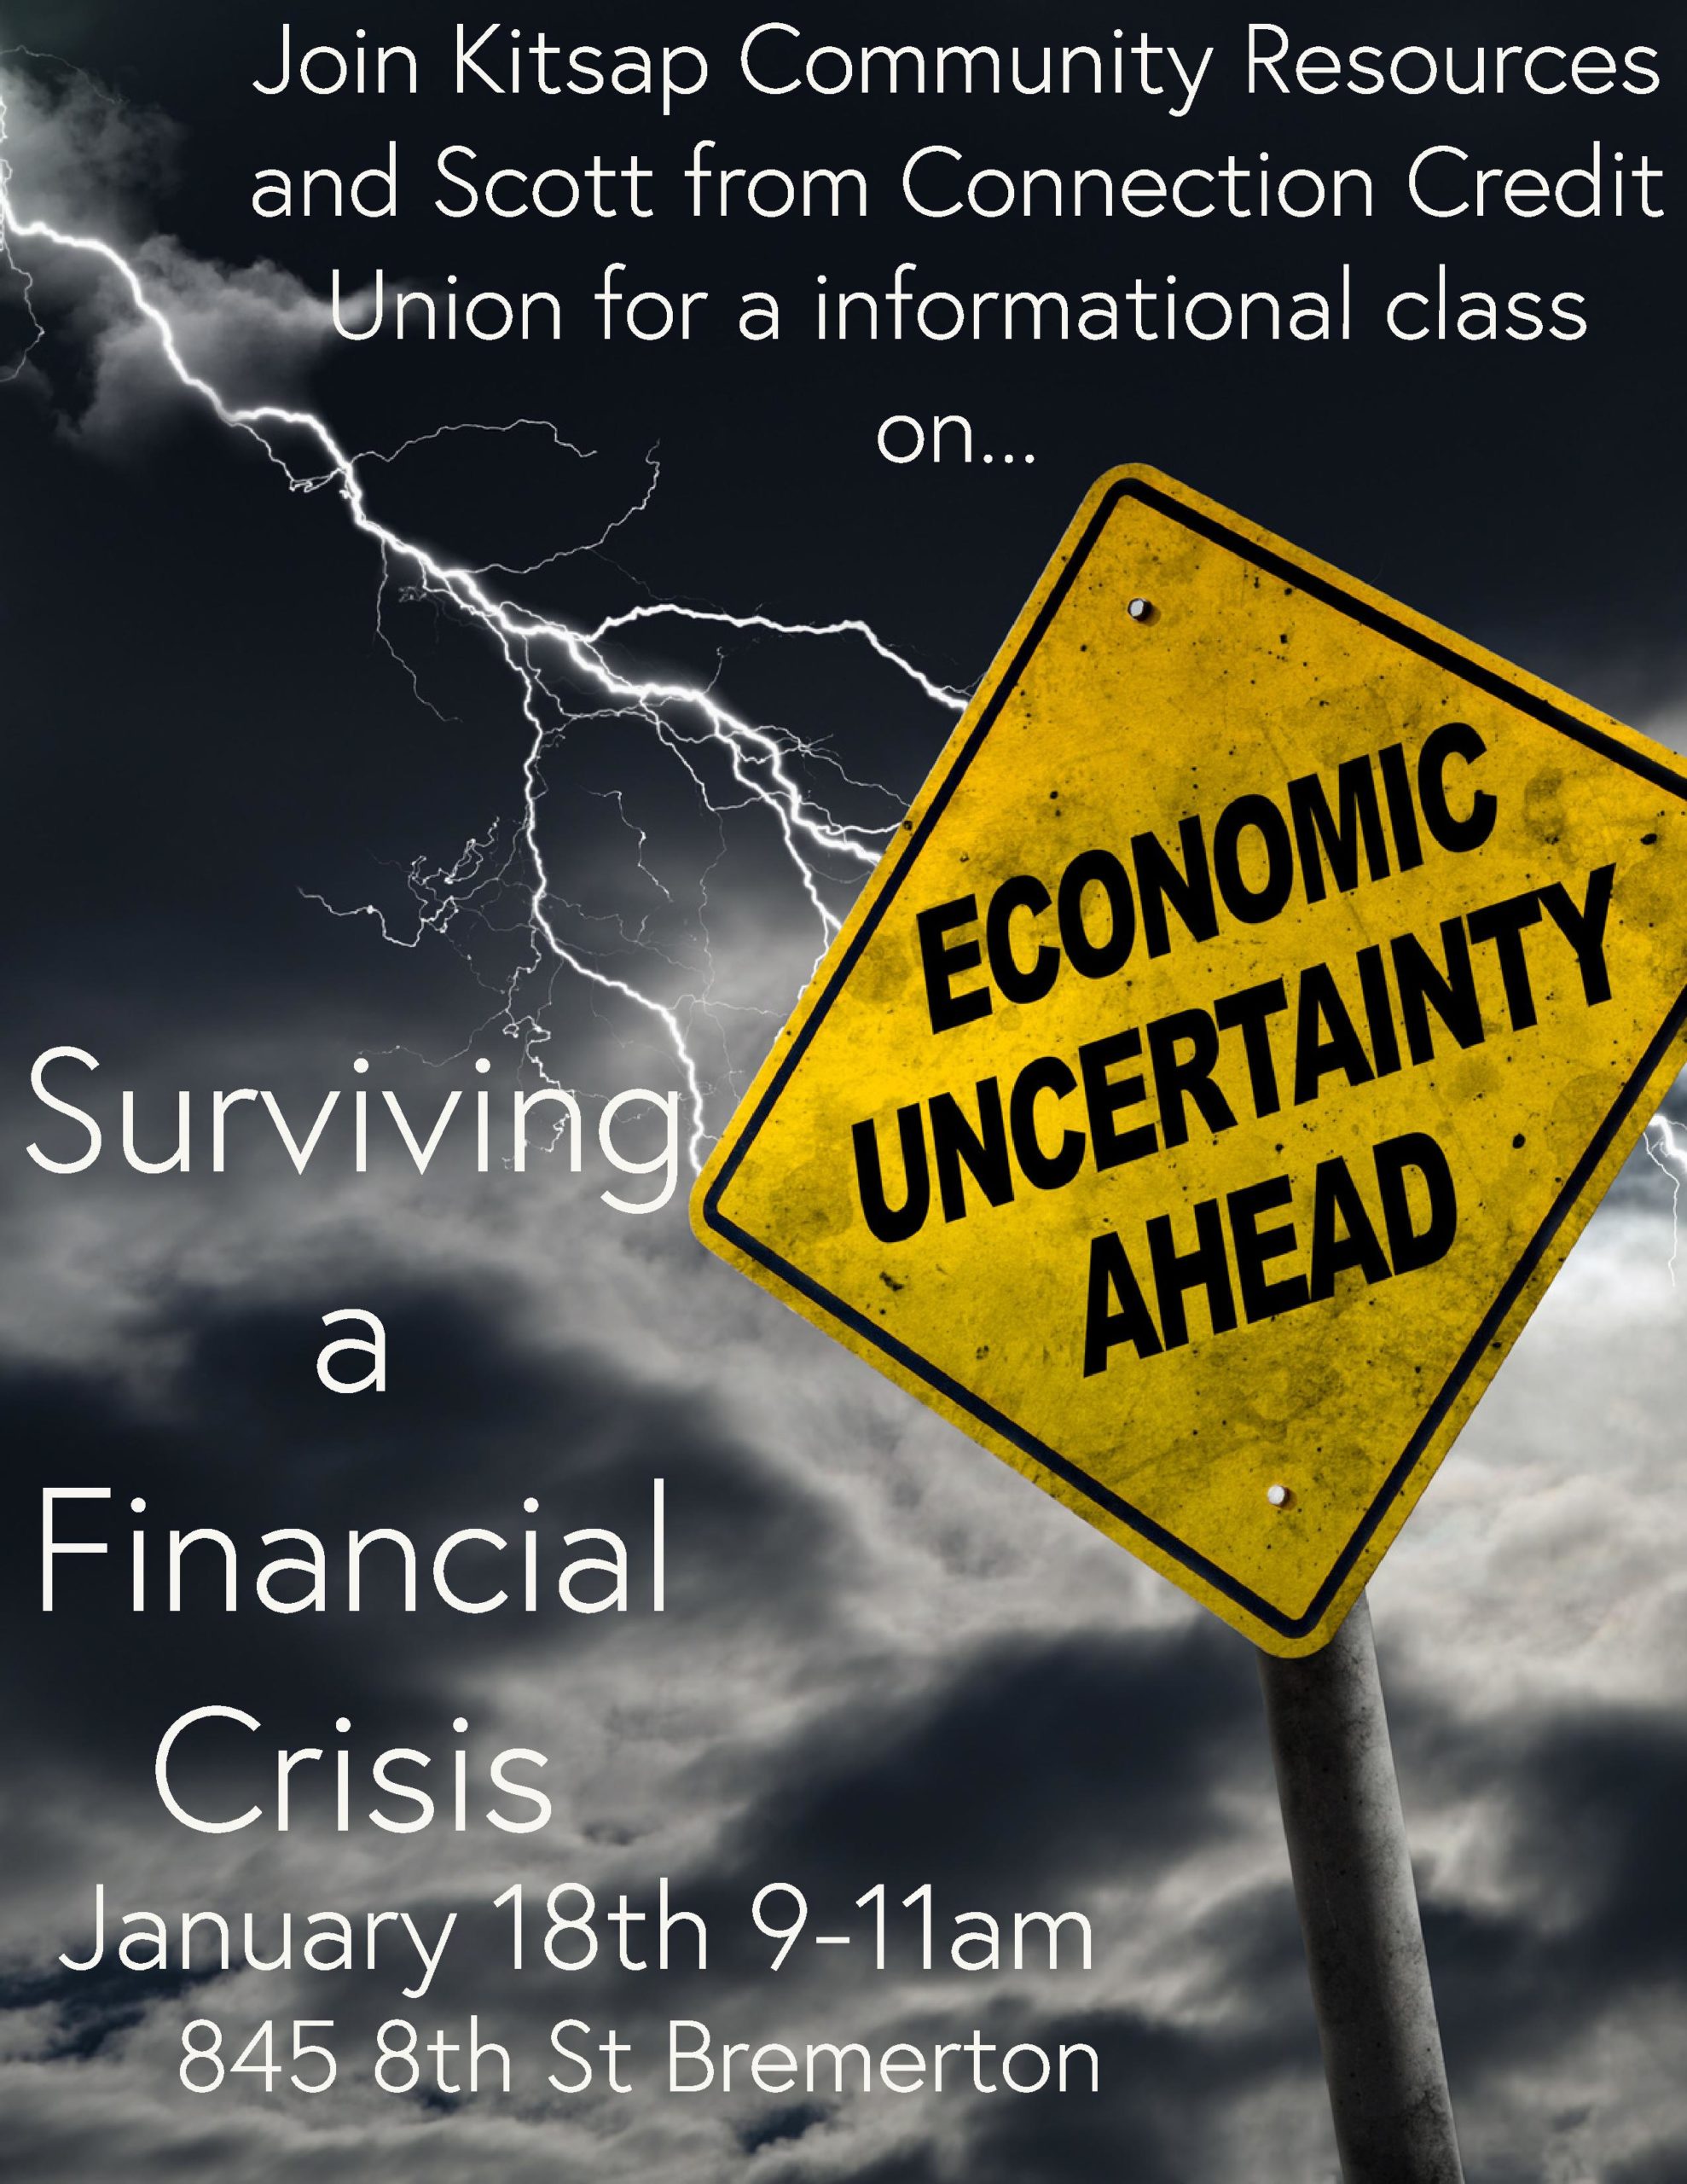 Surviving a Financial Crisis